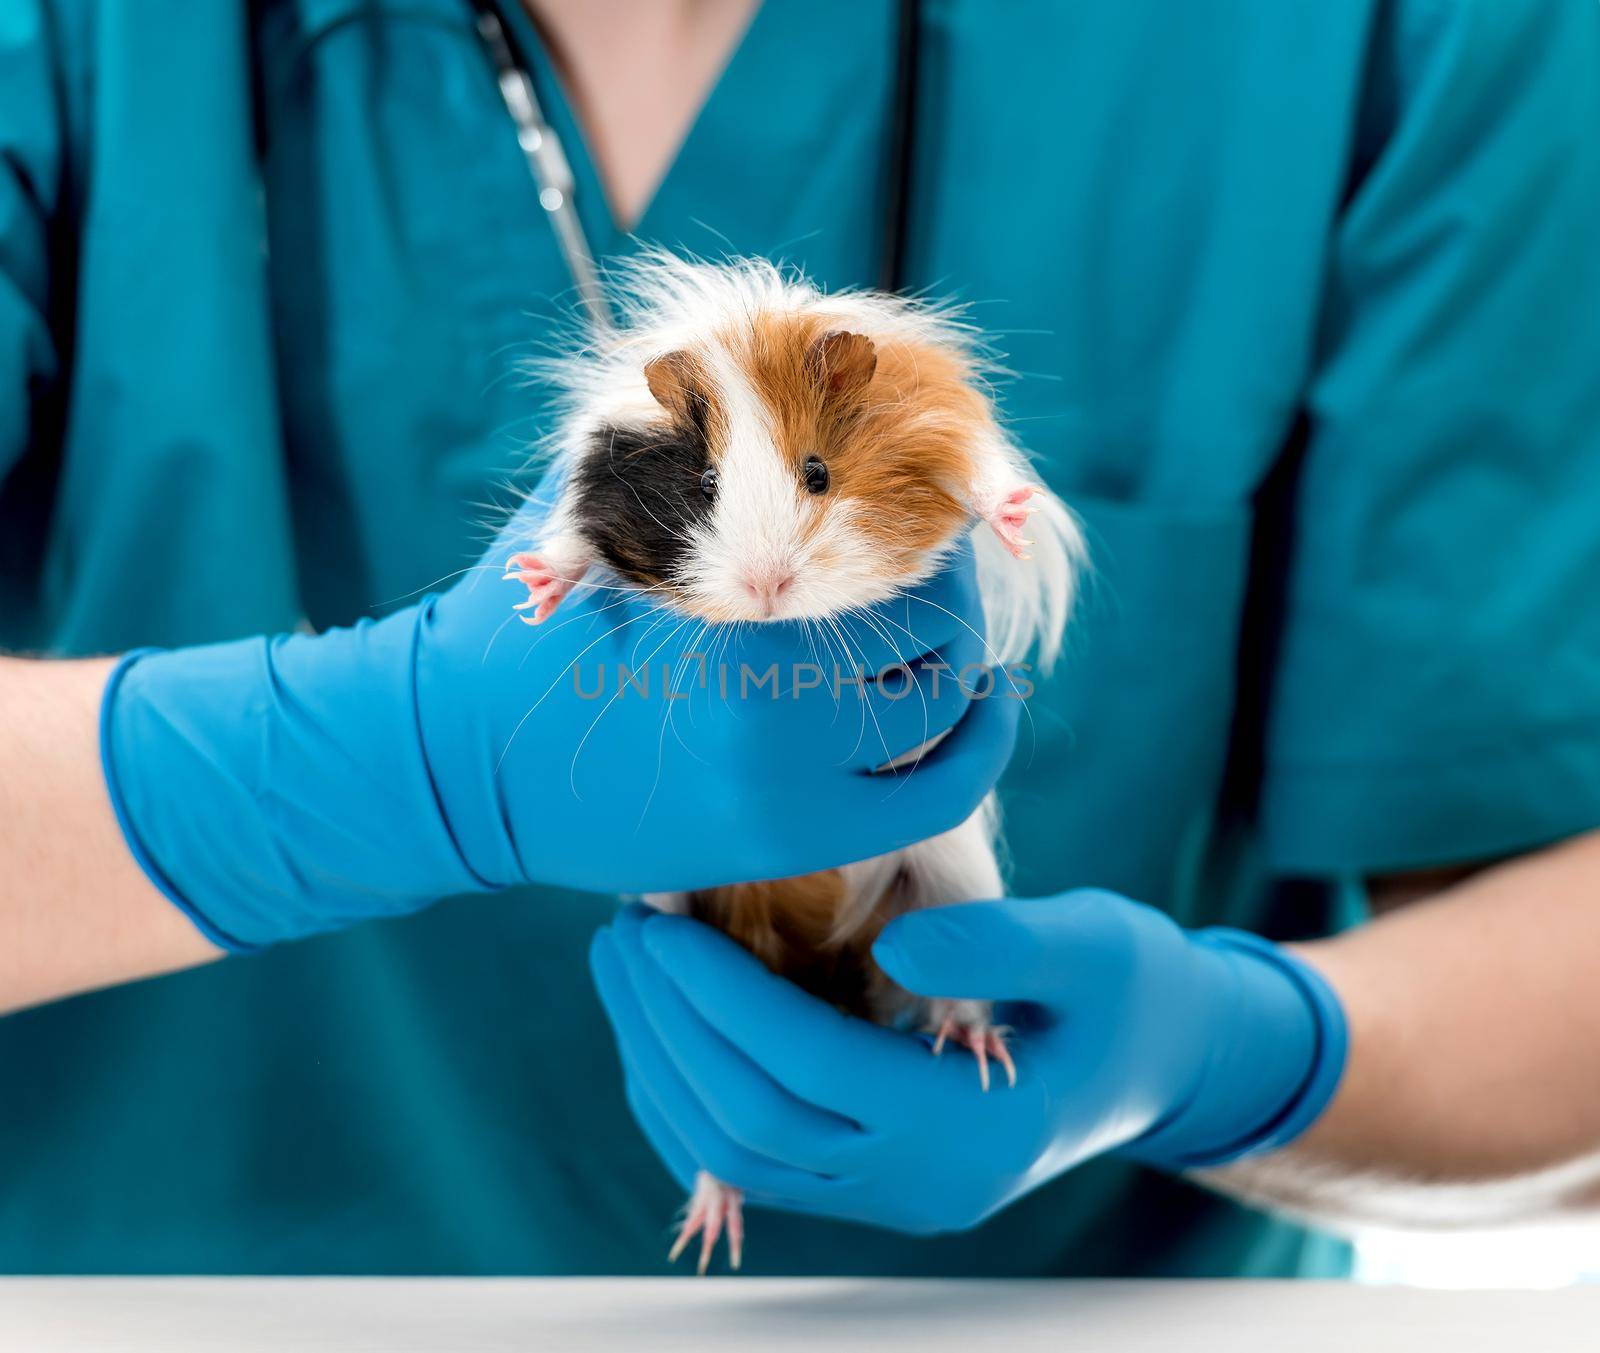 Veterinary doctor holding guinea pig on hands by tan4ikk1